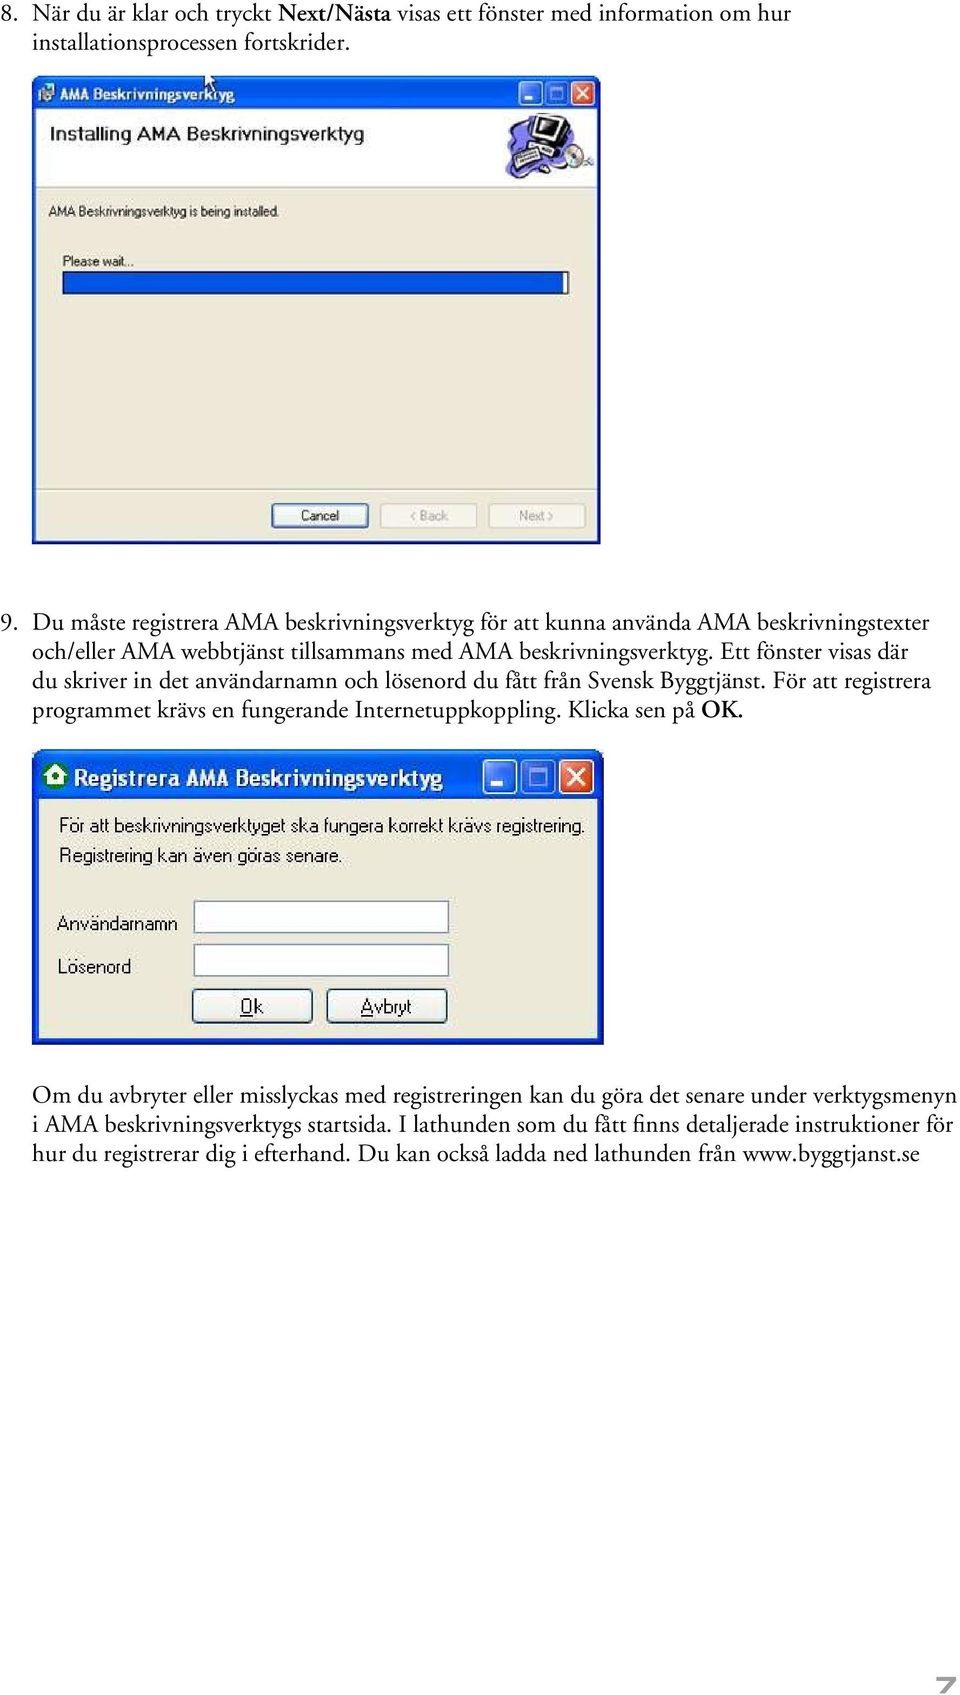 Ett fönster visas där du skriver in det användarnamn och lösenord du fått från Svensk Byggtjänst. För att registrera programmet krävs en fungerande Internetuppkoppling. Klicka sen på OK.